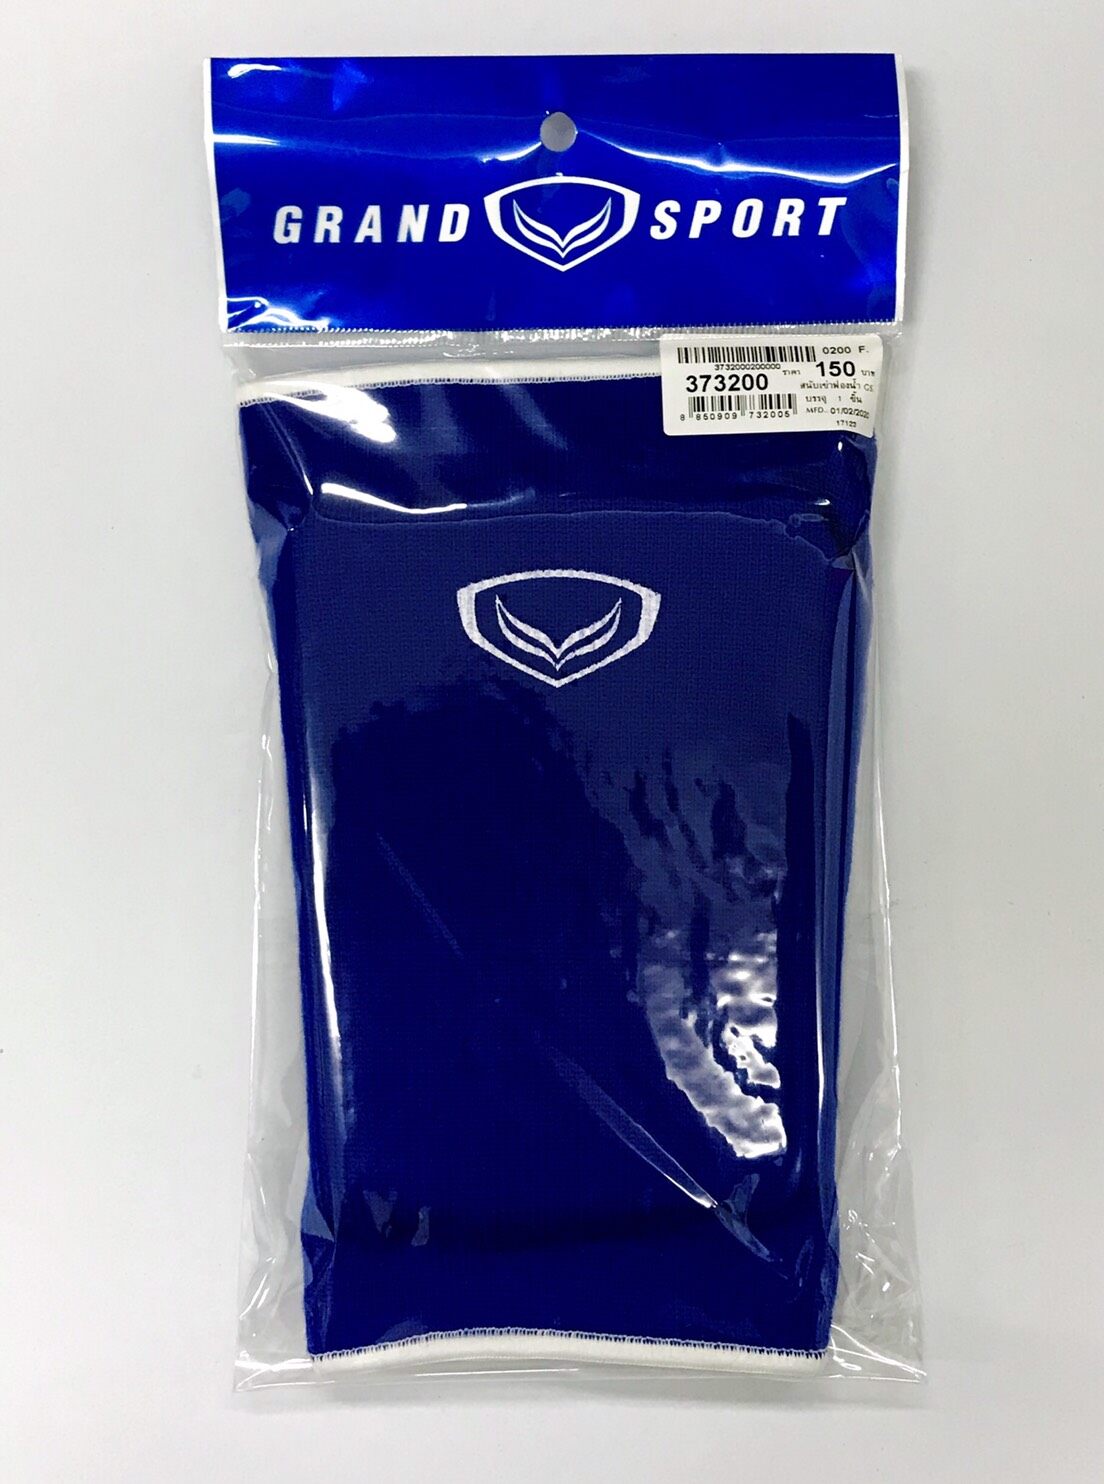 Grand Sport สนับเข่าฟองน้ำ แกรนด์สปอร์ต Knee pads (สีน้ำเงิน) 1 อัน